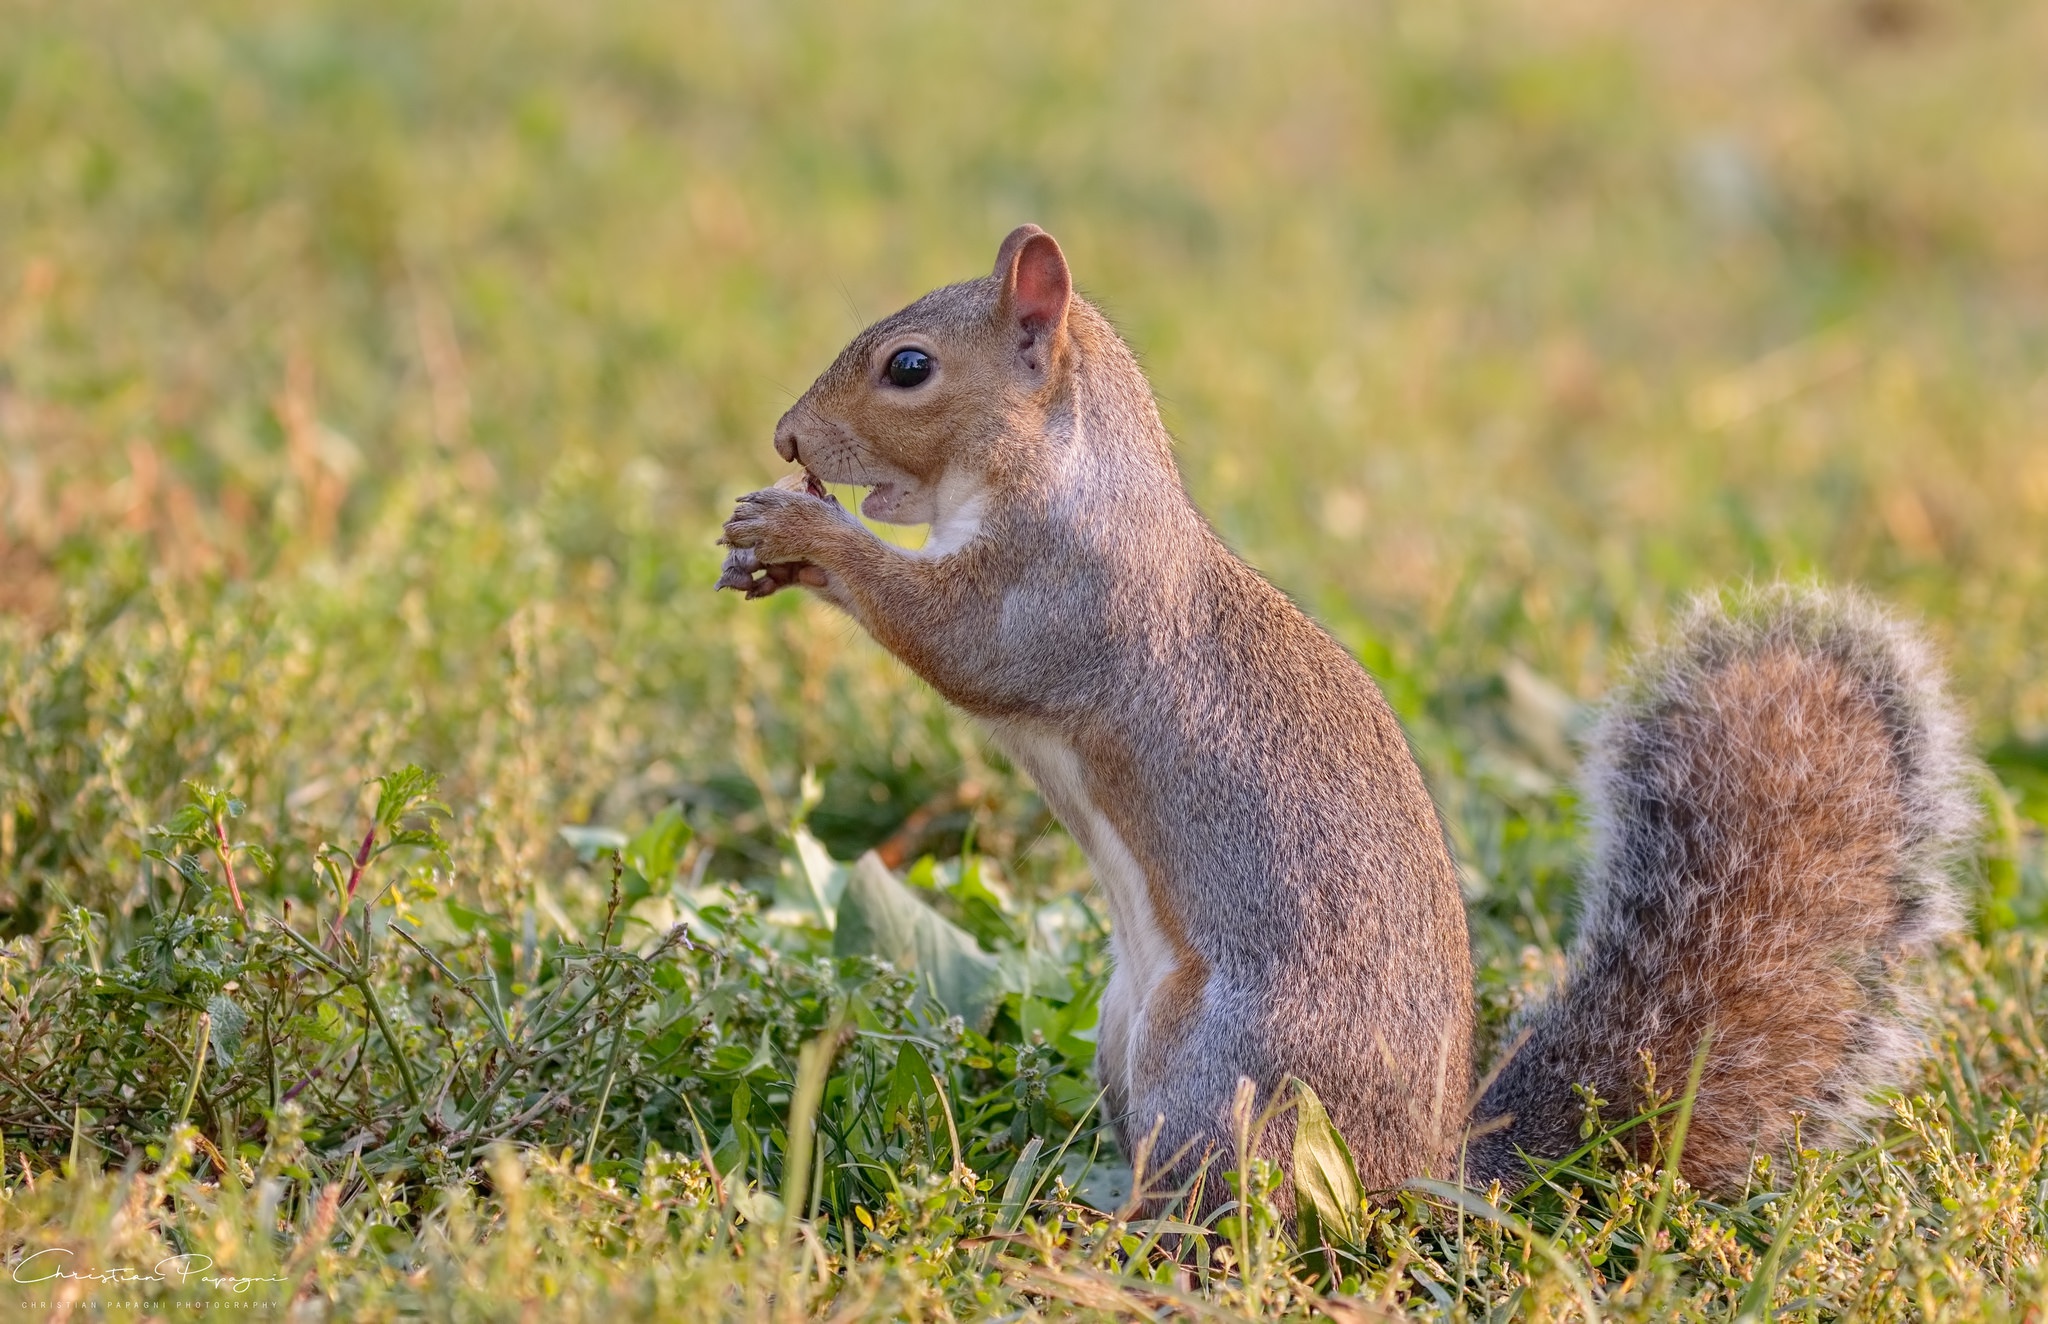  Squirrel Cellphone FHD pic